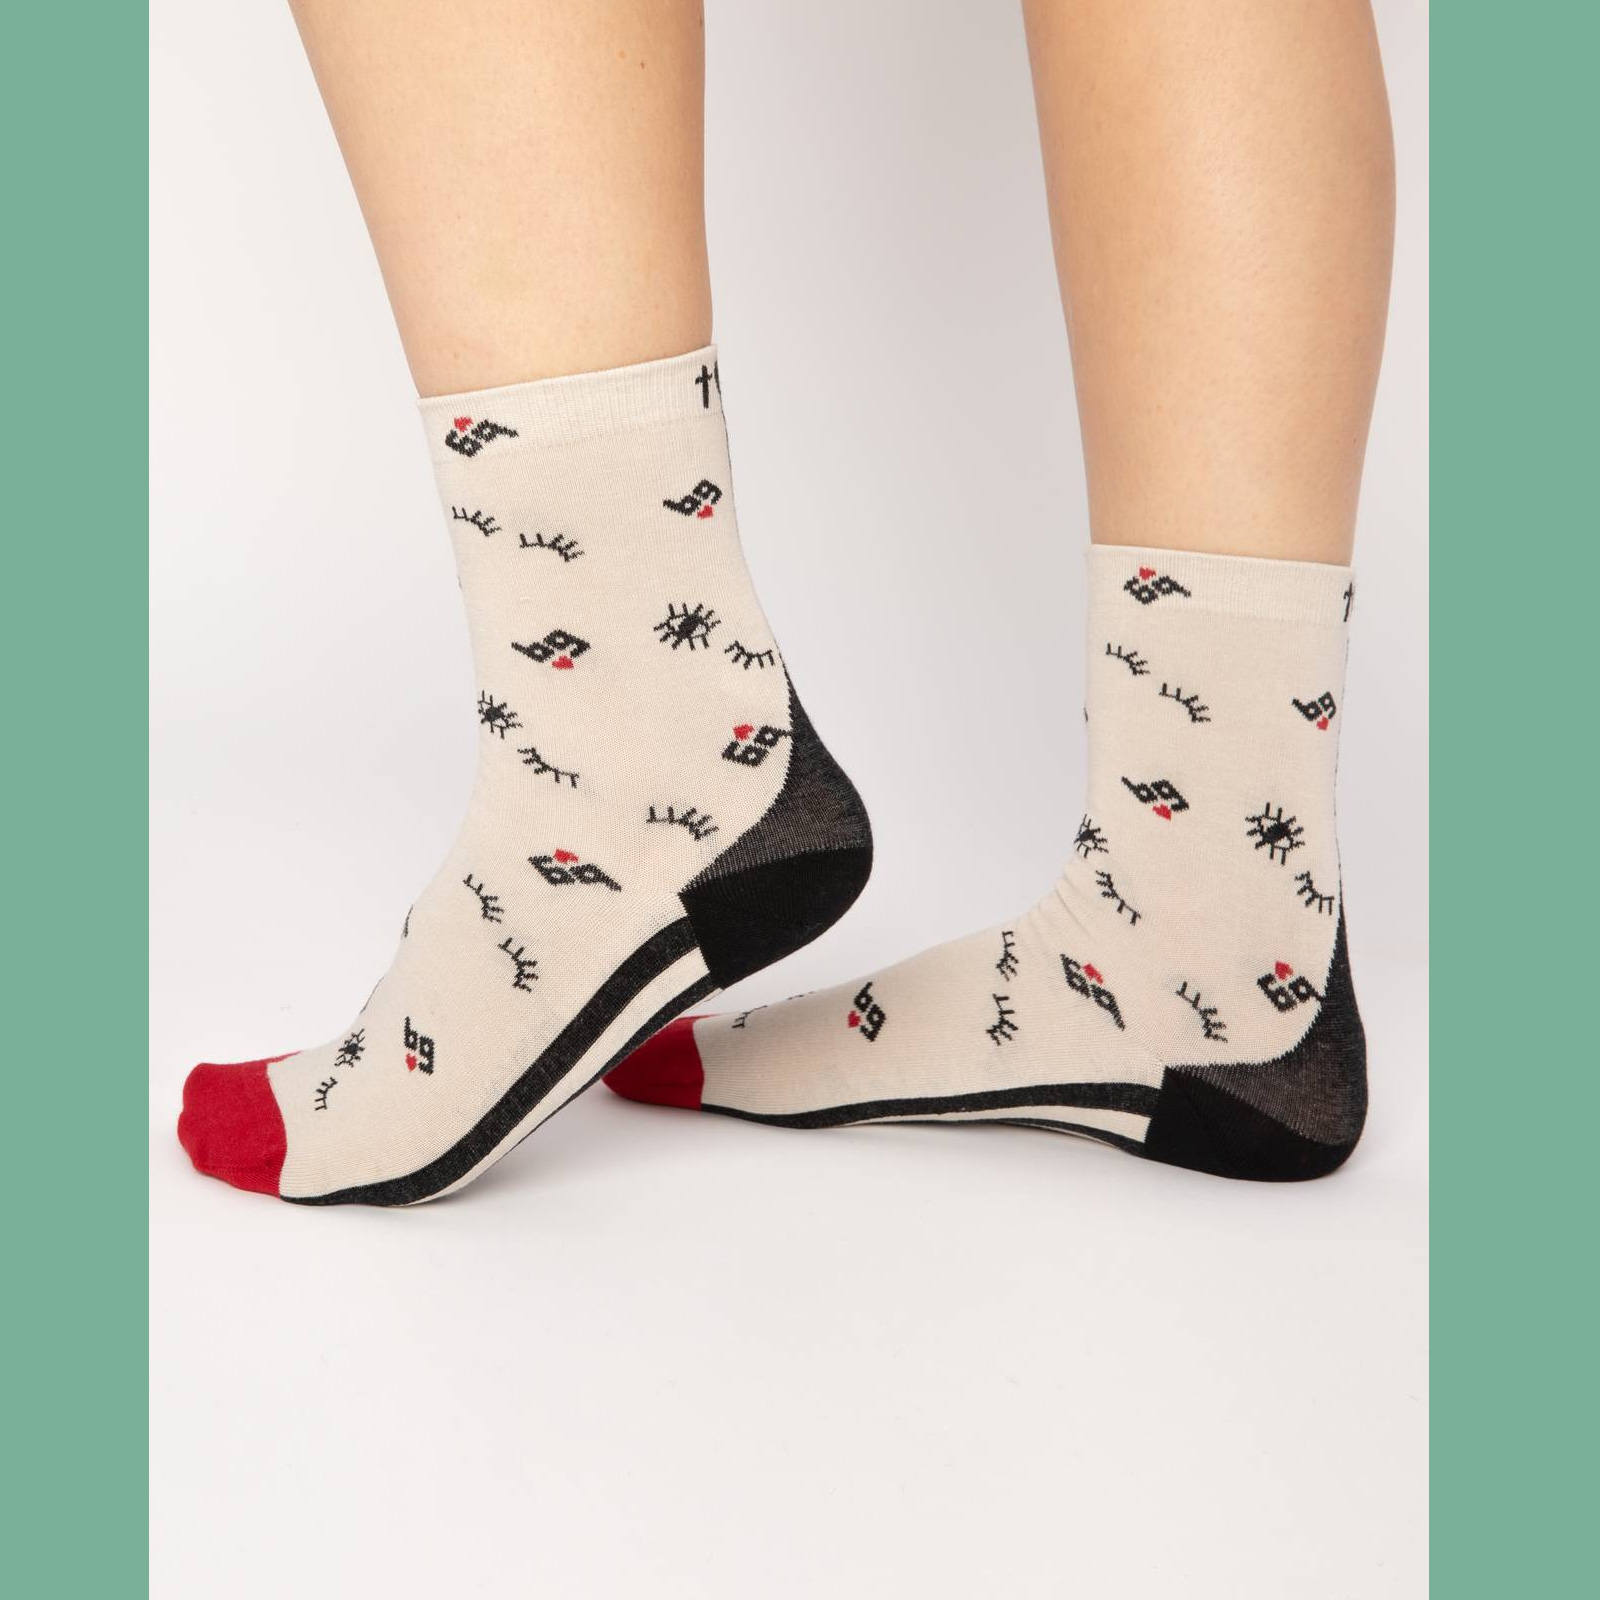  Blutsgeschwister Socken sensational steps , One Size ( ca. 38 - 40 ), just a little crush